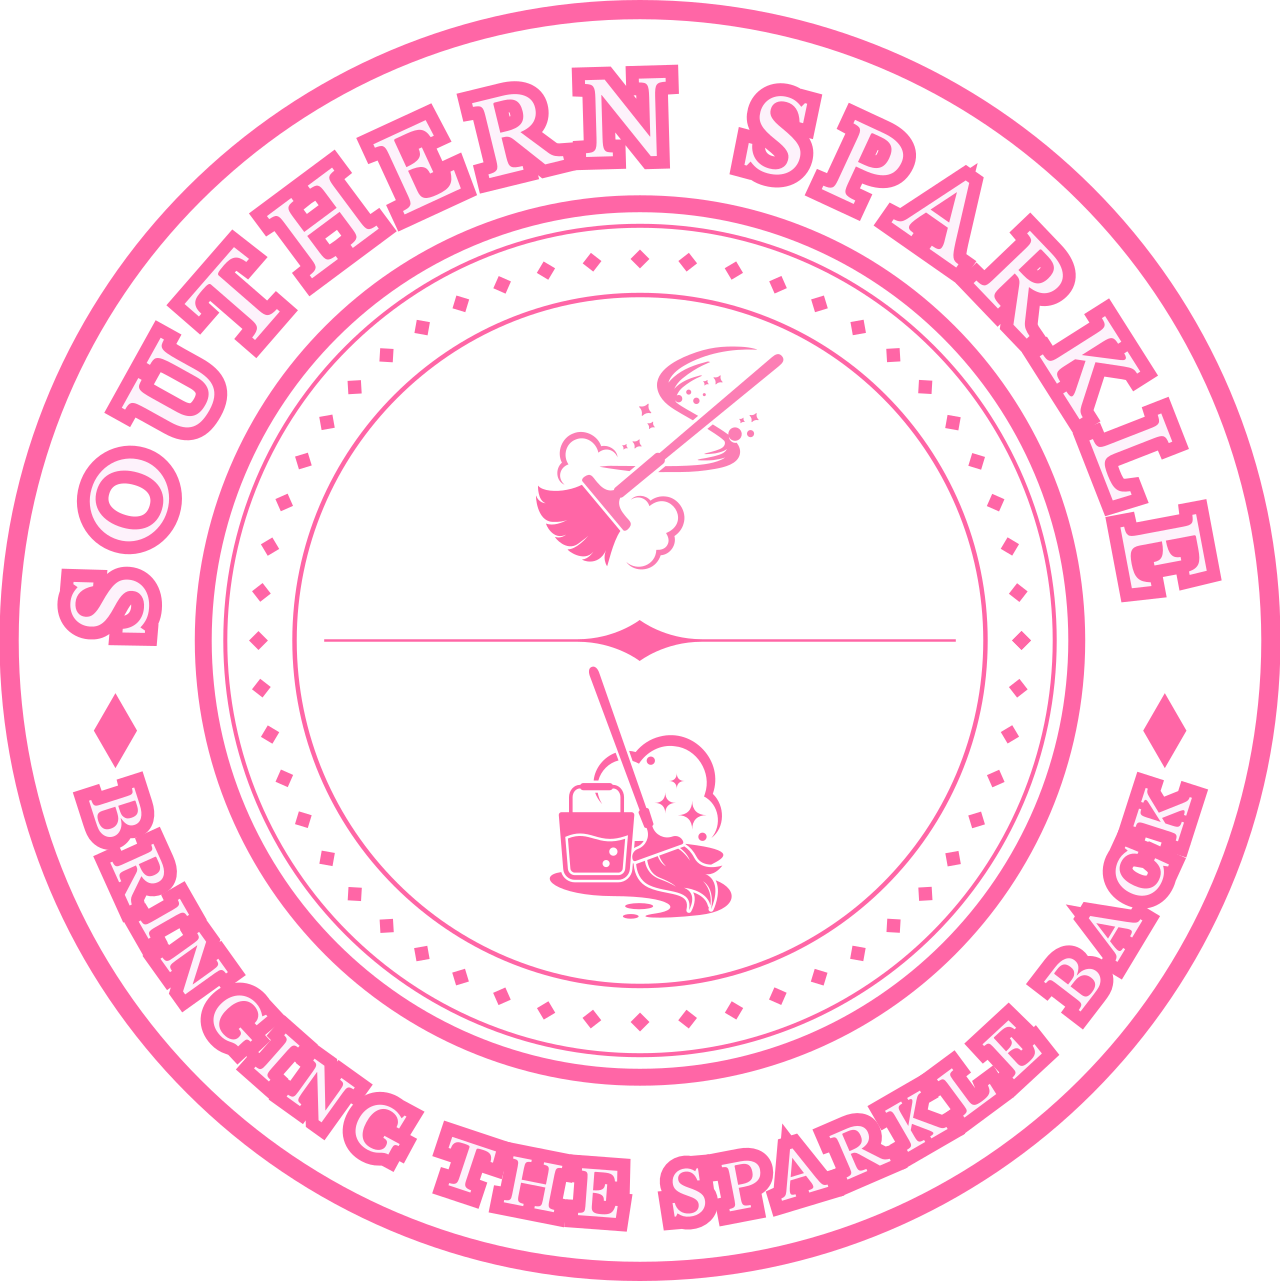 SOUTHERN SPARKLE 's logo